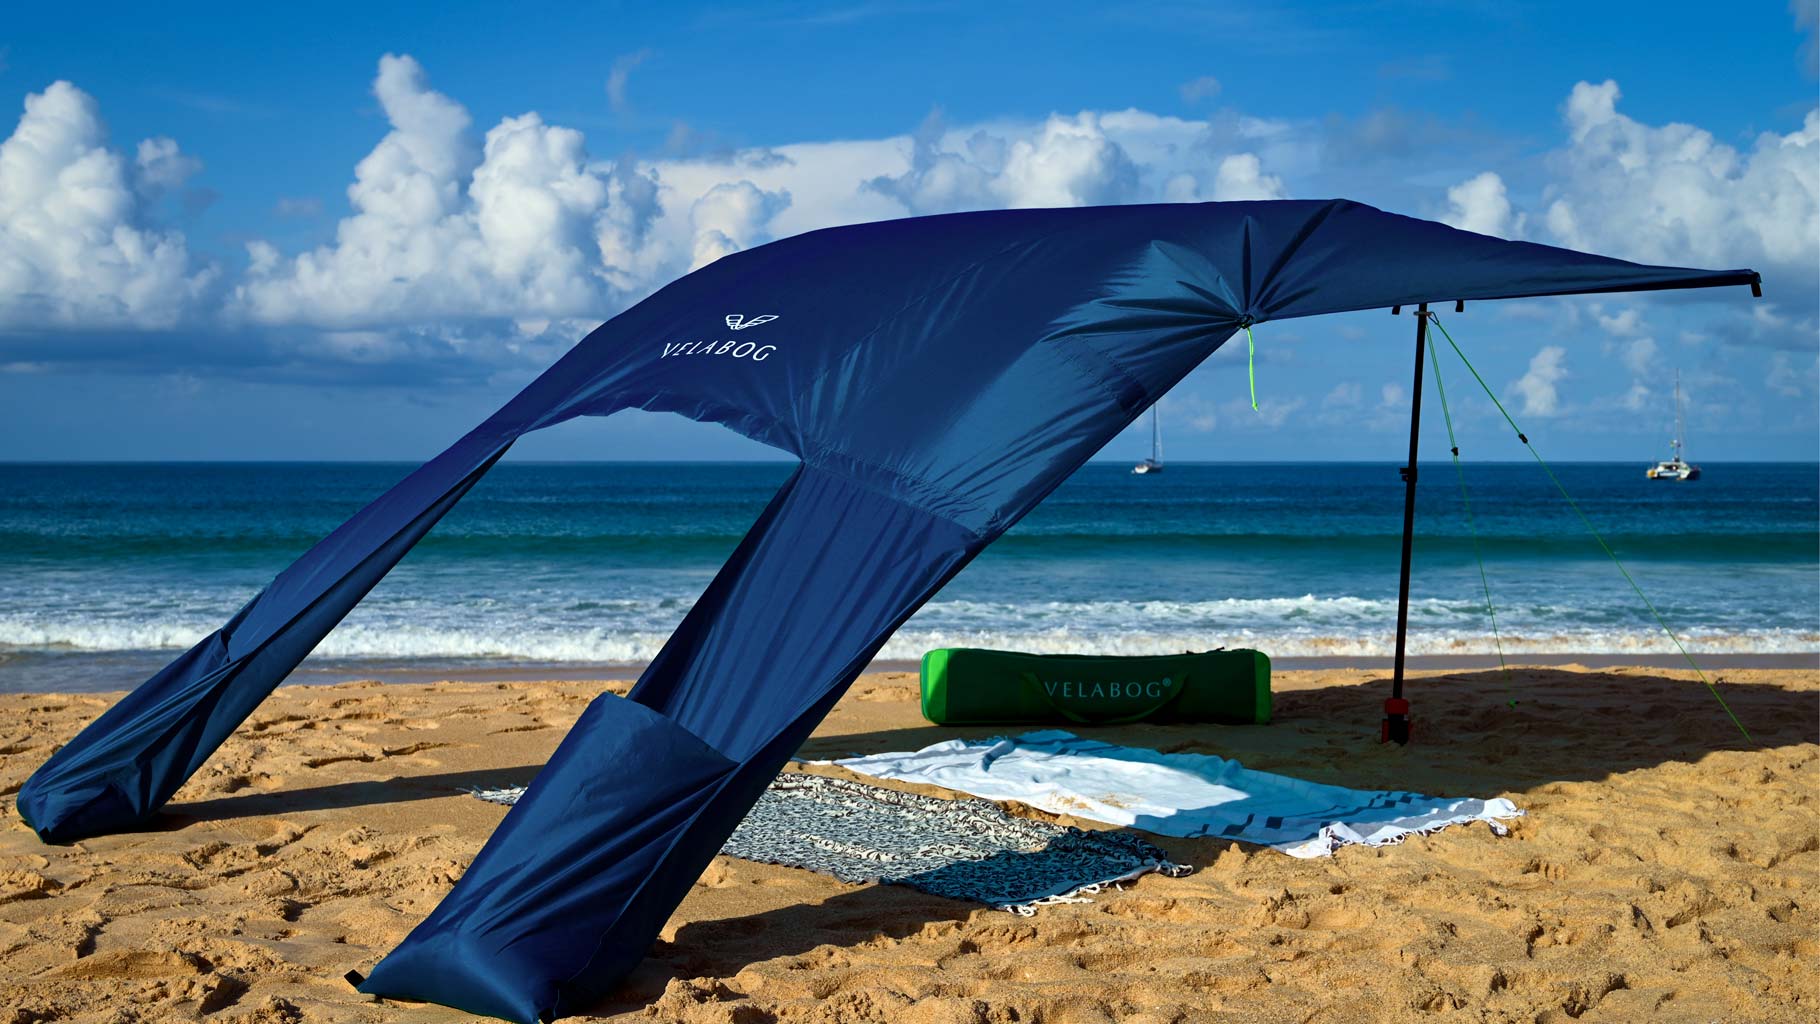 Voile d’ombrage tente plage Velabog Breeze bleu nuit sur une plage venteuse. Voile d’ombrage, parasol et tente de plage en un seul produit. Très spacieux mais compact. Vue en biais de dos.